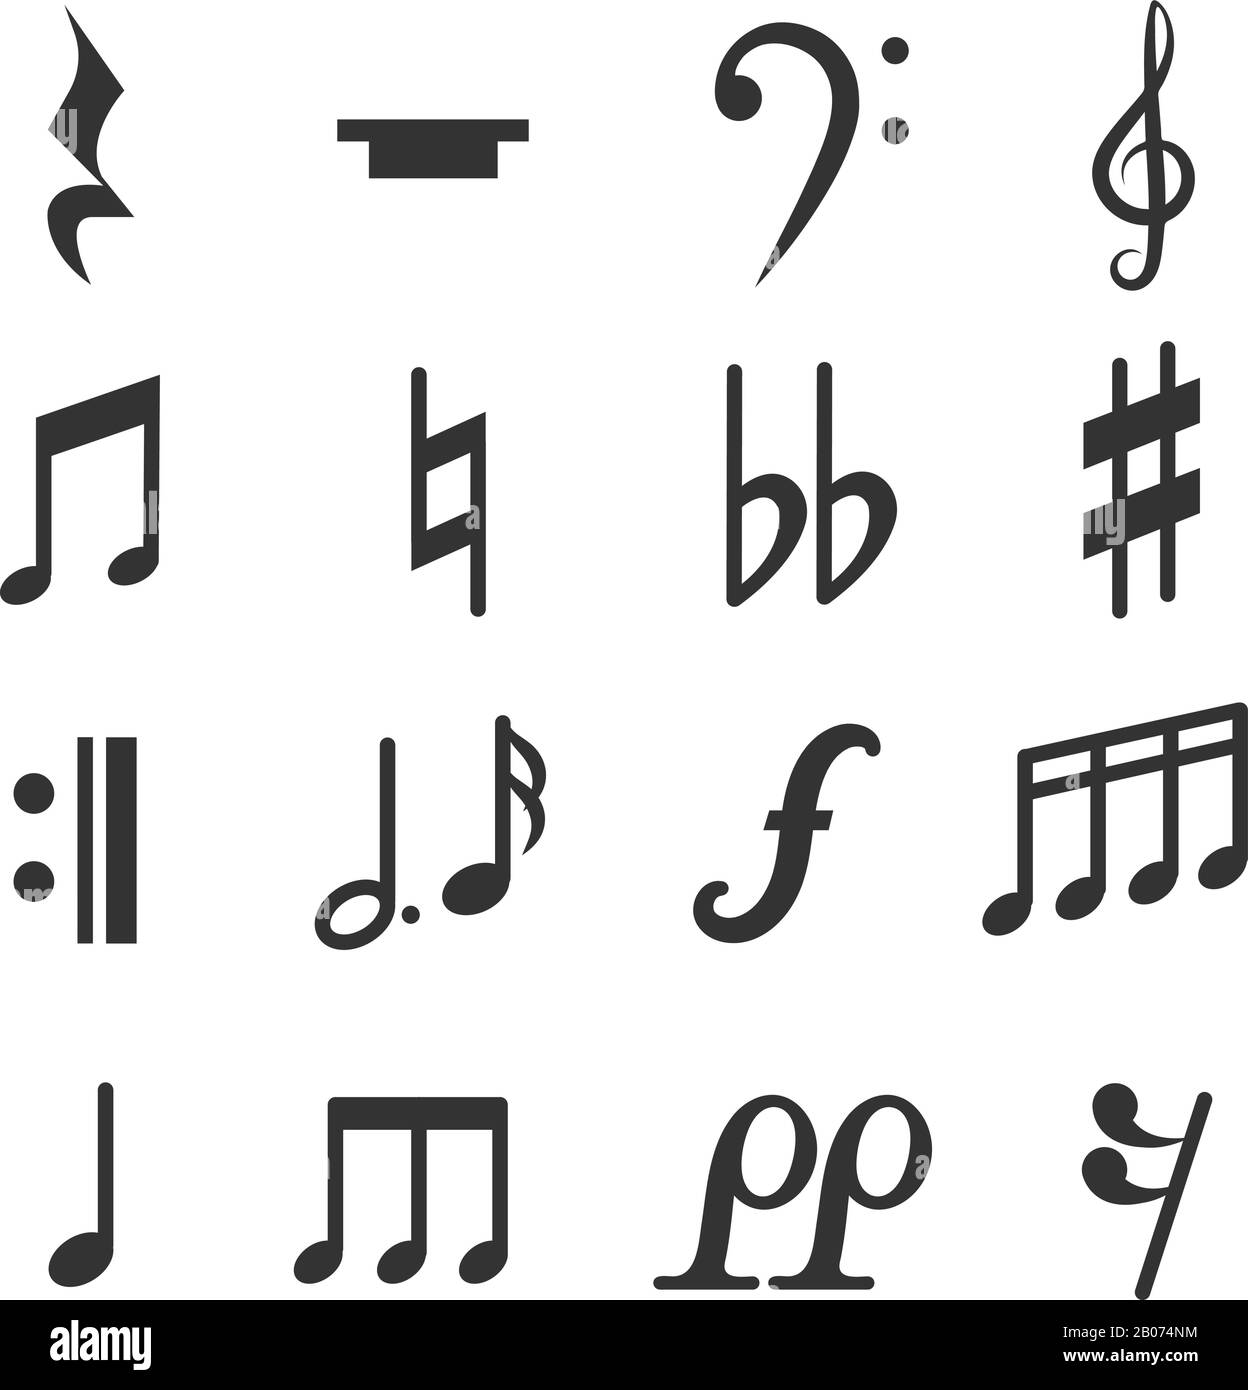 Vektorsymbole für Musiknotizen festgelegt. Diez und flache musikalische Schilder Illustration Stock Vektor